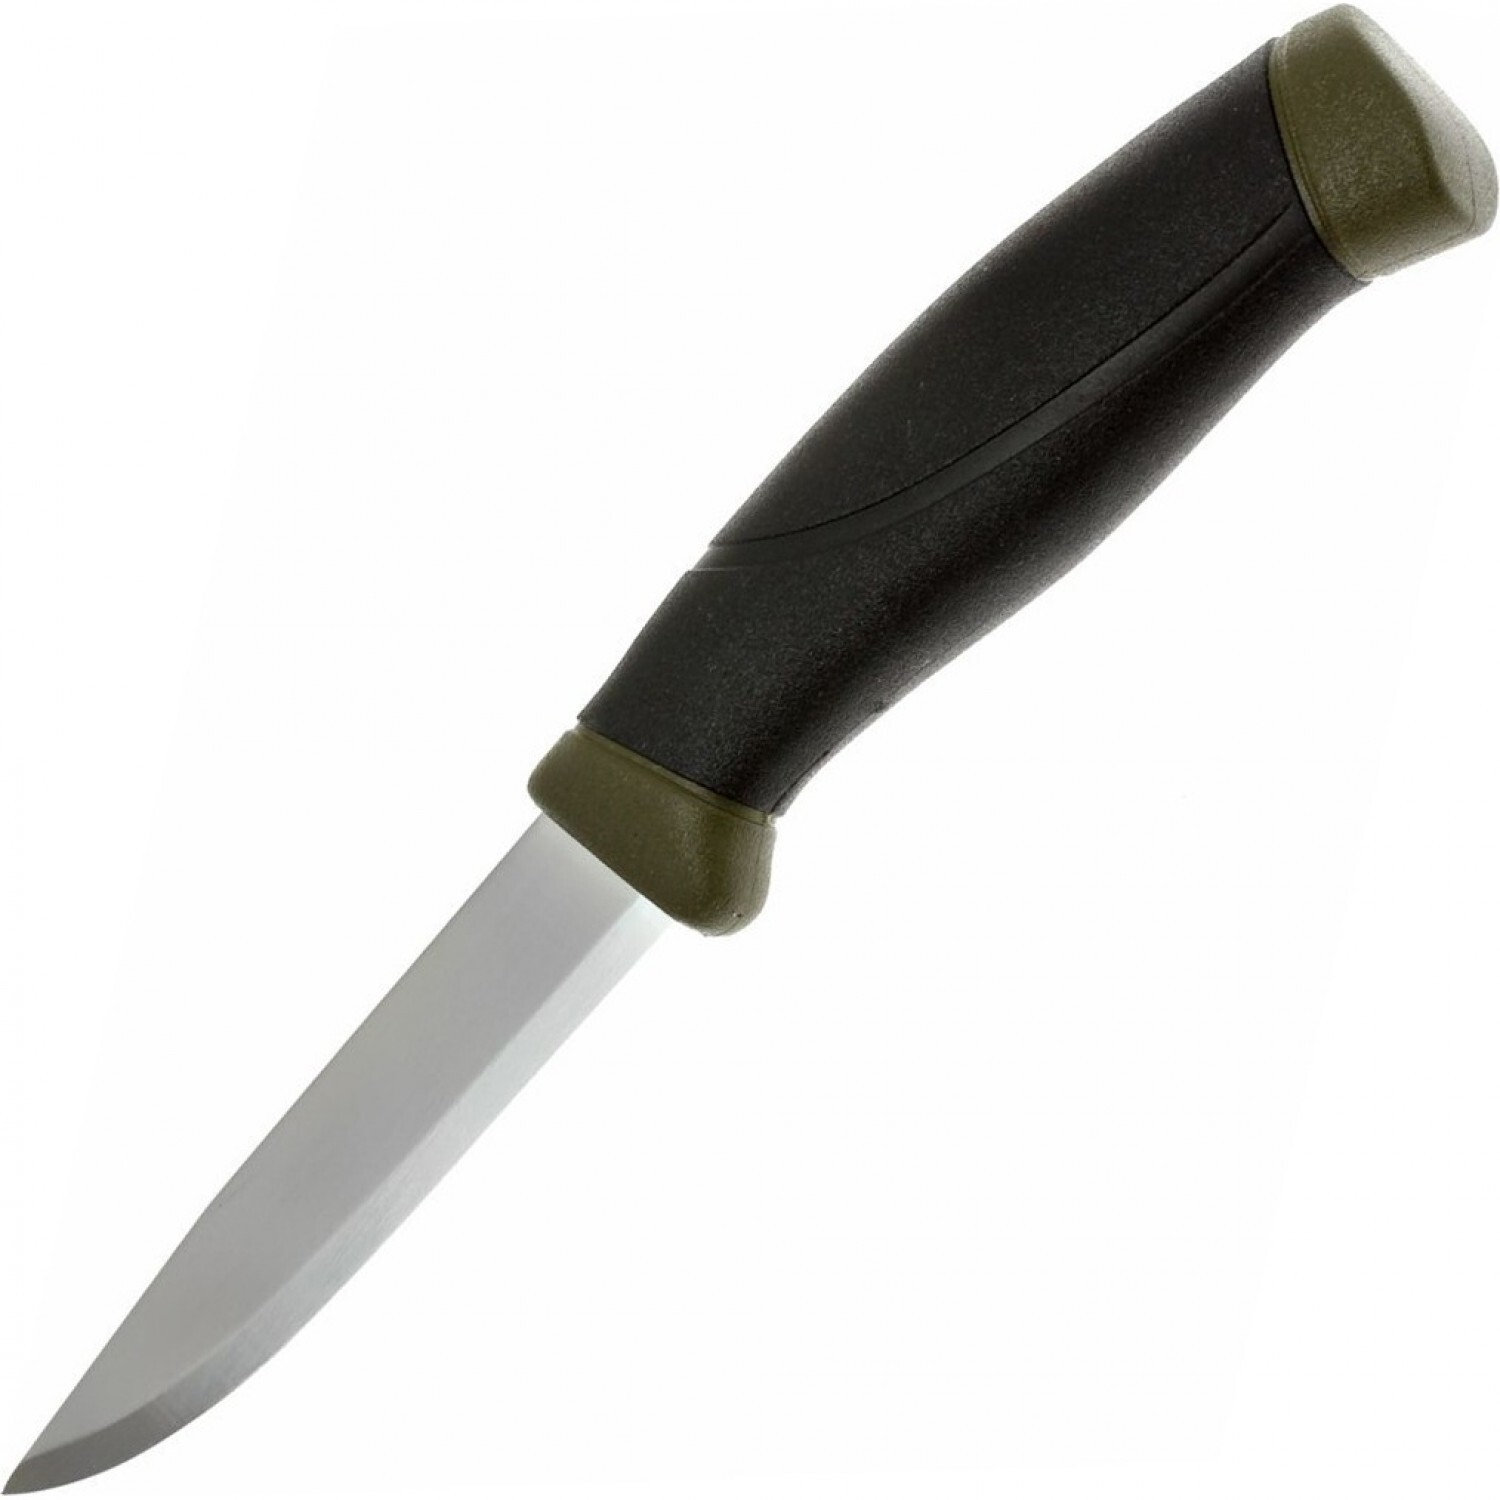 Нож с фиксированным лезвием Morakniv Companion MG (C), углеродистая сталь, рукоять резина/пластик, цвет хаки полуавтоматический складной нож kershaw leek сталь sandvik™ 14c28n рукоять анодированный алюминий хаки